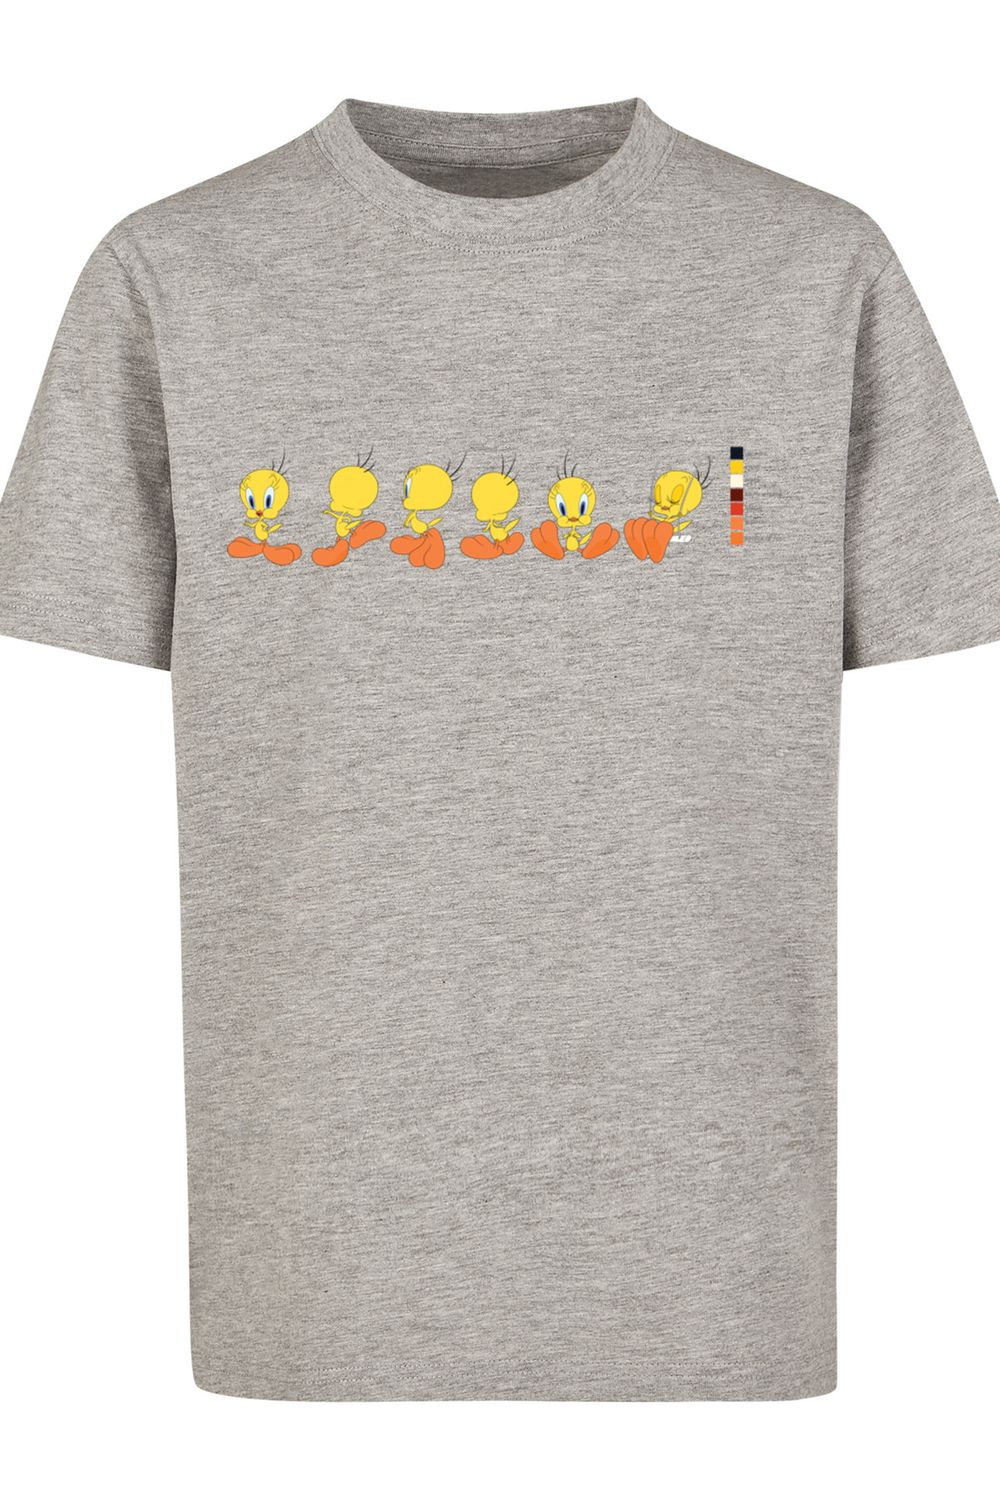 T-Shirt Kinder Tweety Trendyol Tunes Pie F4NT4STIC Kids mit Basic Farbcode-WHT Looney -